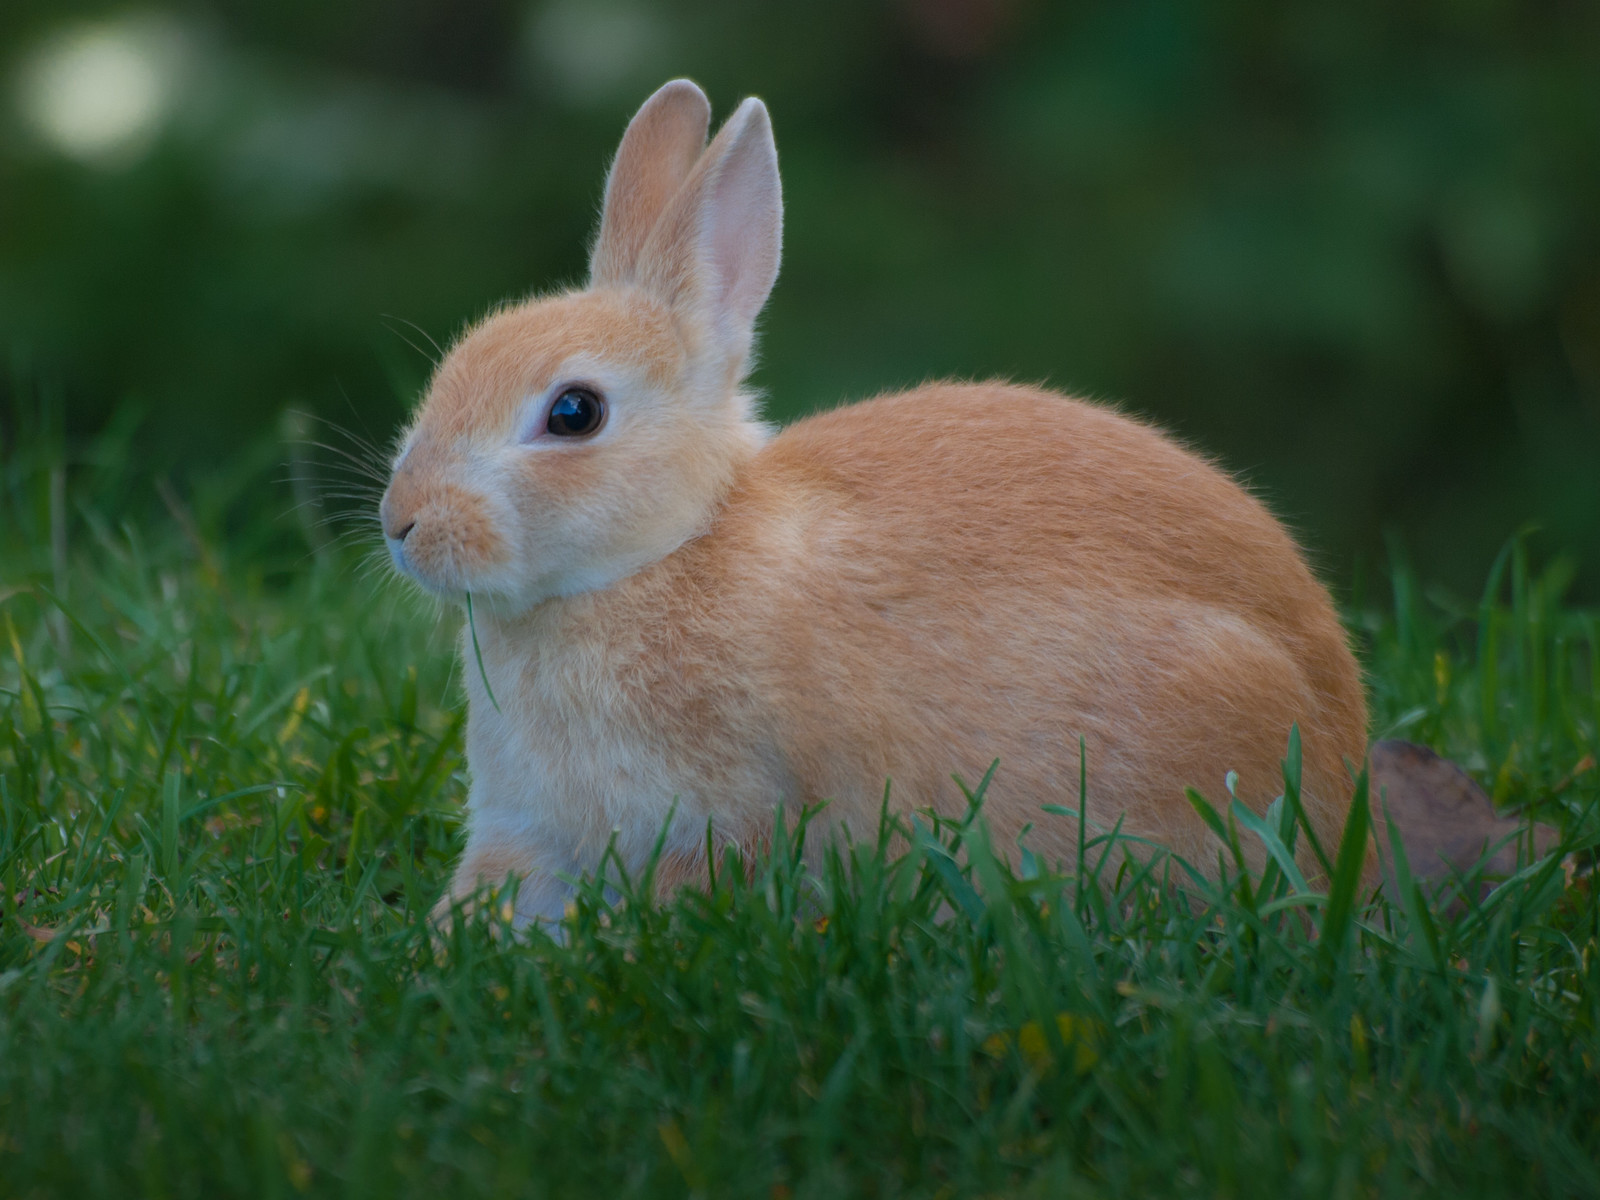 Hare vs Rabbit Vs Bunny